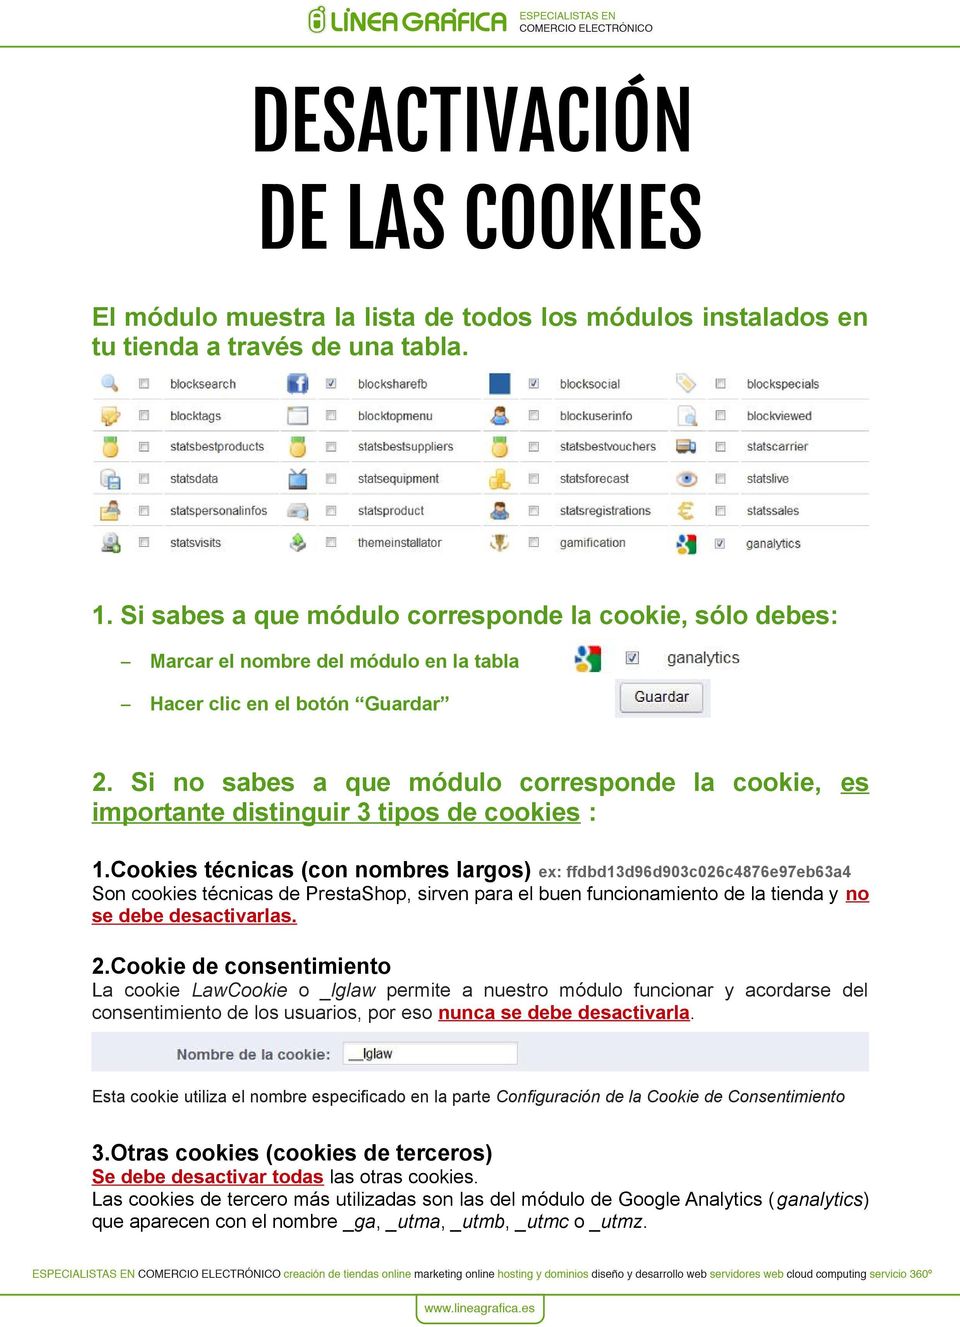 Si no sabes a que módulo corresponde la cookie, es importante distinguir 3 tipos de cookies : 1.